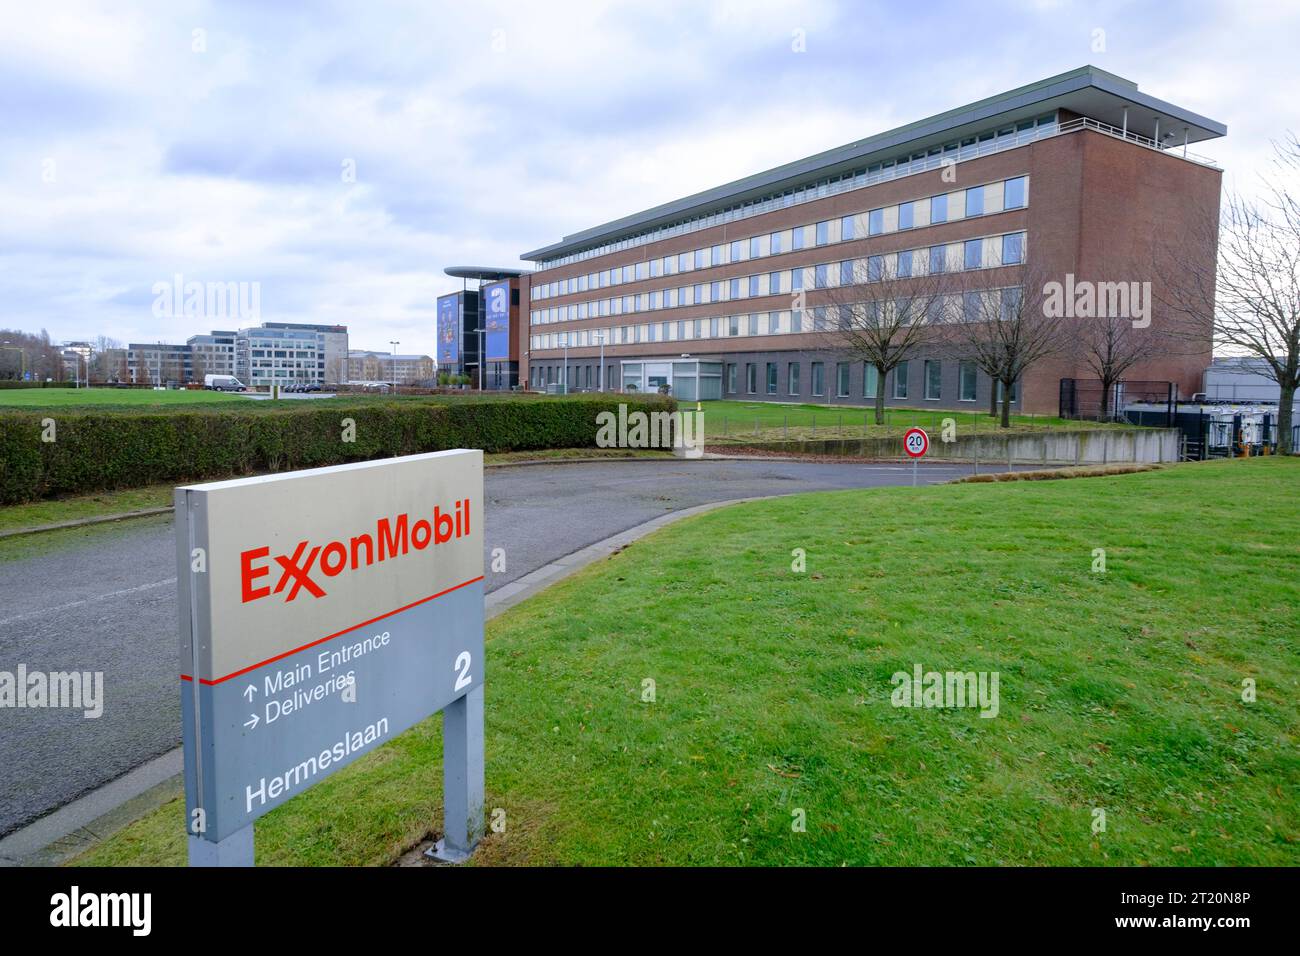 Belgique, Diegem : siège social d'ExxonMobil Corporation, multinationale américaine du pétrole et du gaz Banque D'Images